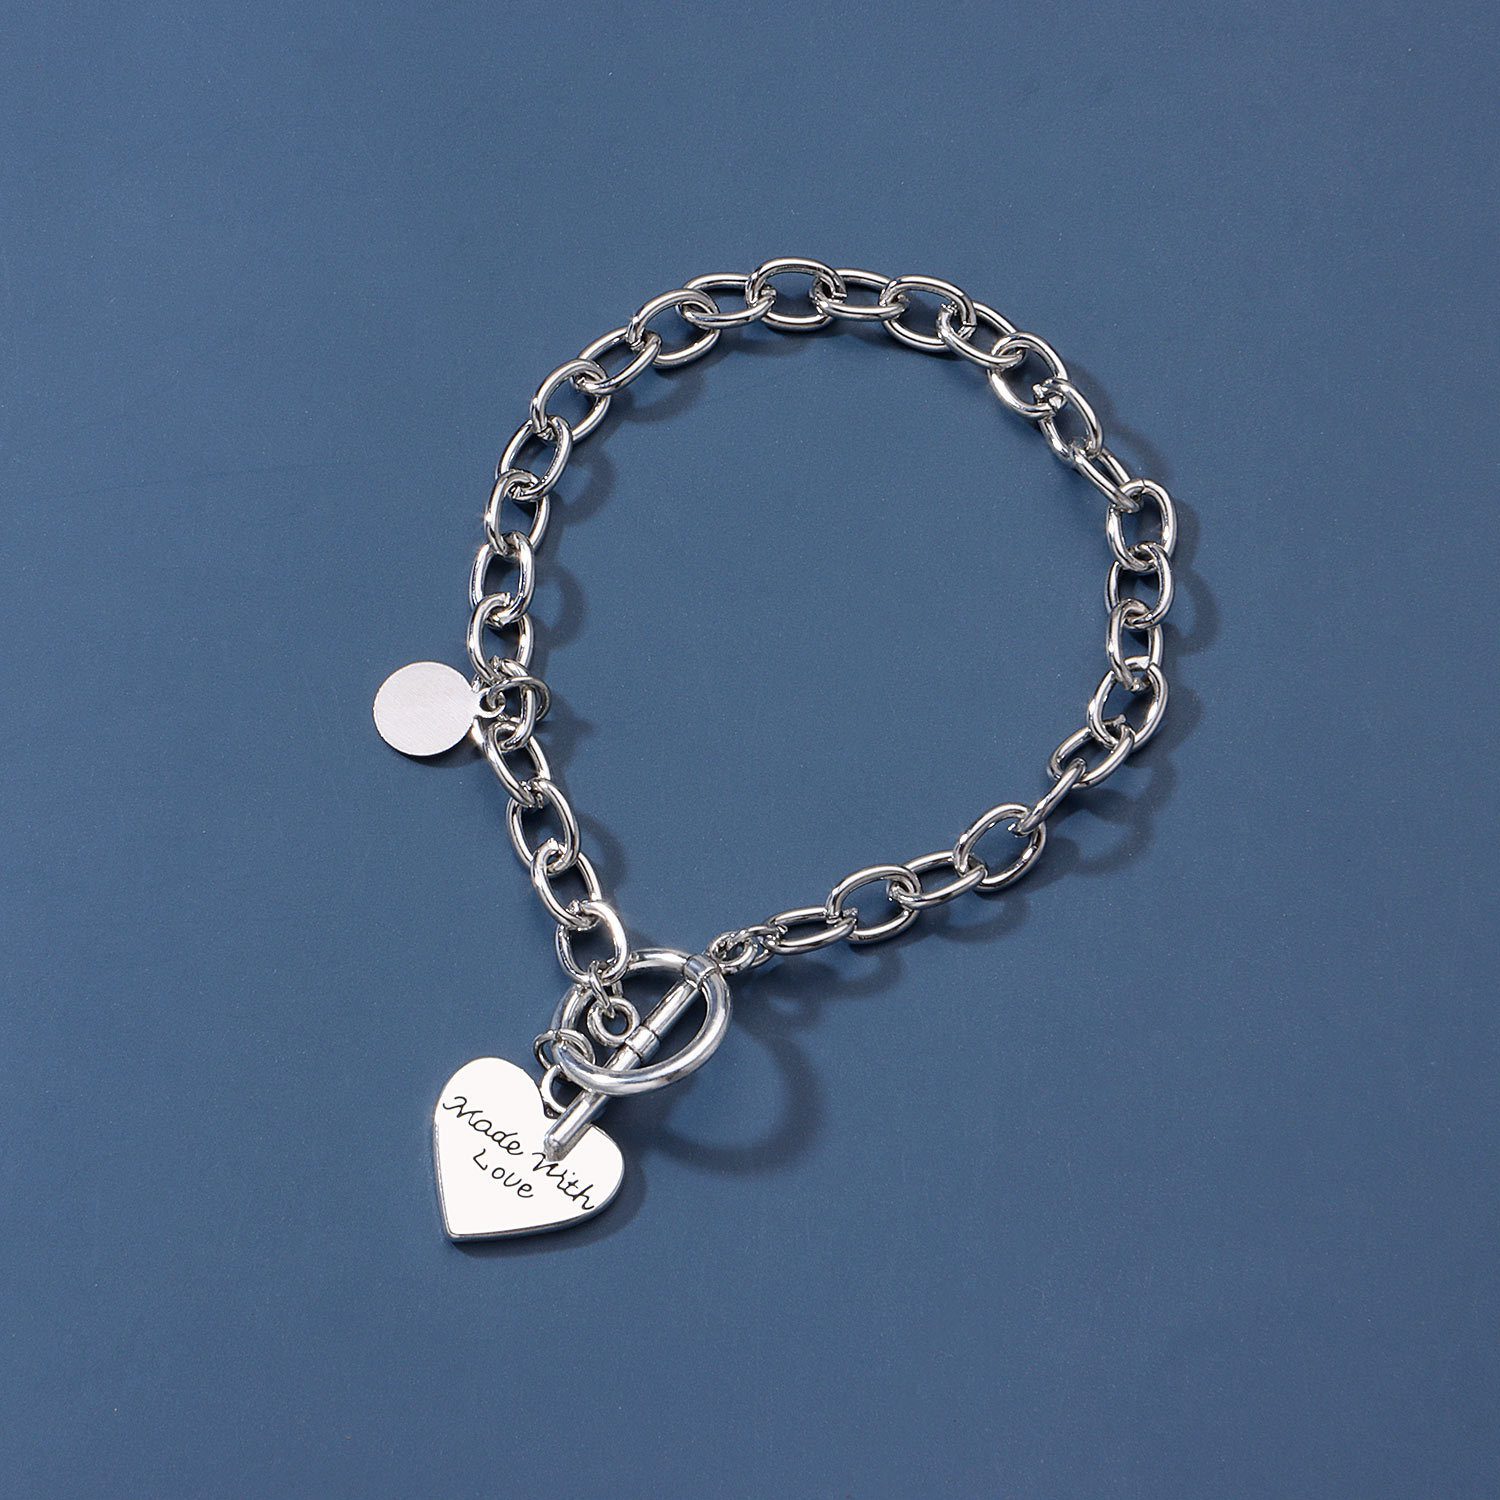 Jewelry Women's Popular LoveBracelet Heart Shaped Chain Alloy Pendant Jewelry